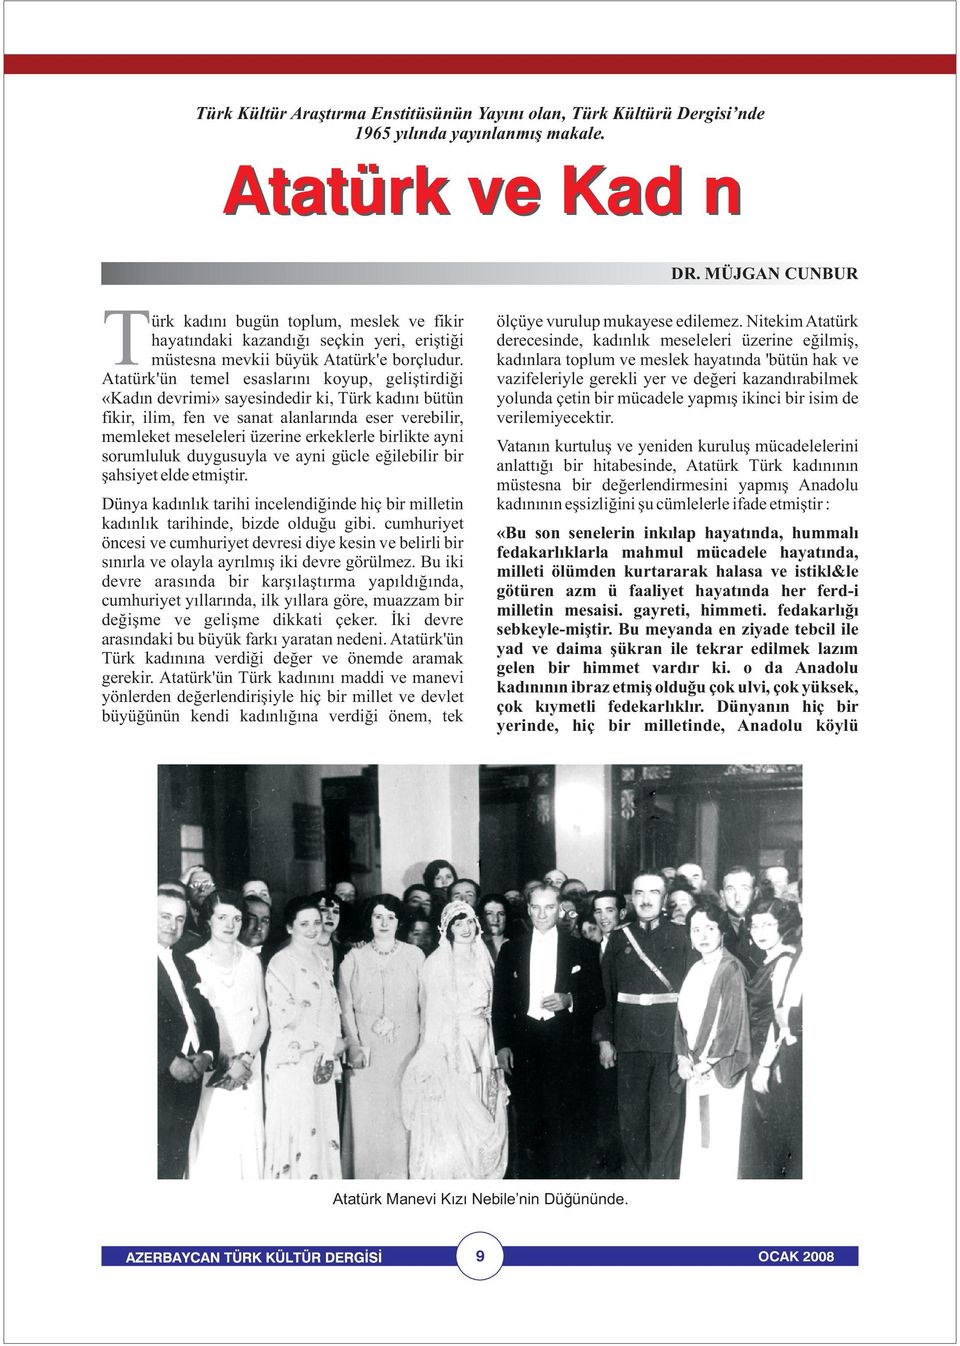 Atatürk'ün temel esaslarını koyup, geliştirdiği «Kadın devrimi» sayesindedir ki, Türk kadını bütün fikir, ilim, fen ve sanat alanlarında eser verebilir, memleket meseleleri üzerine erkeklerle